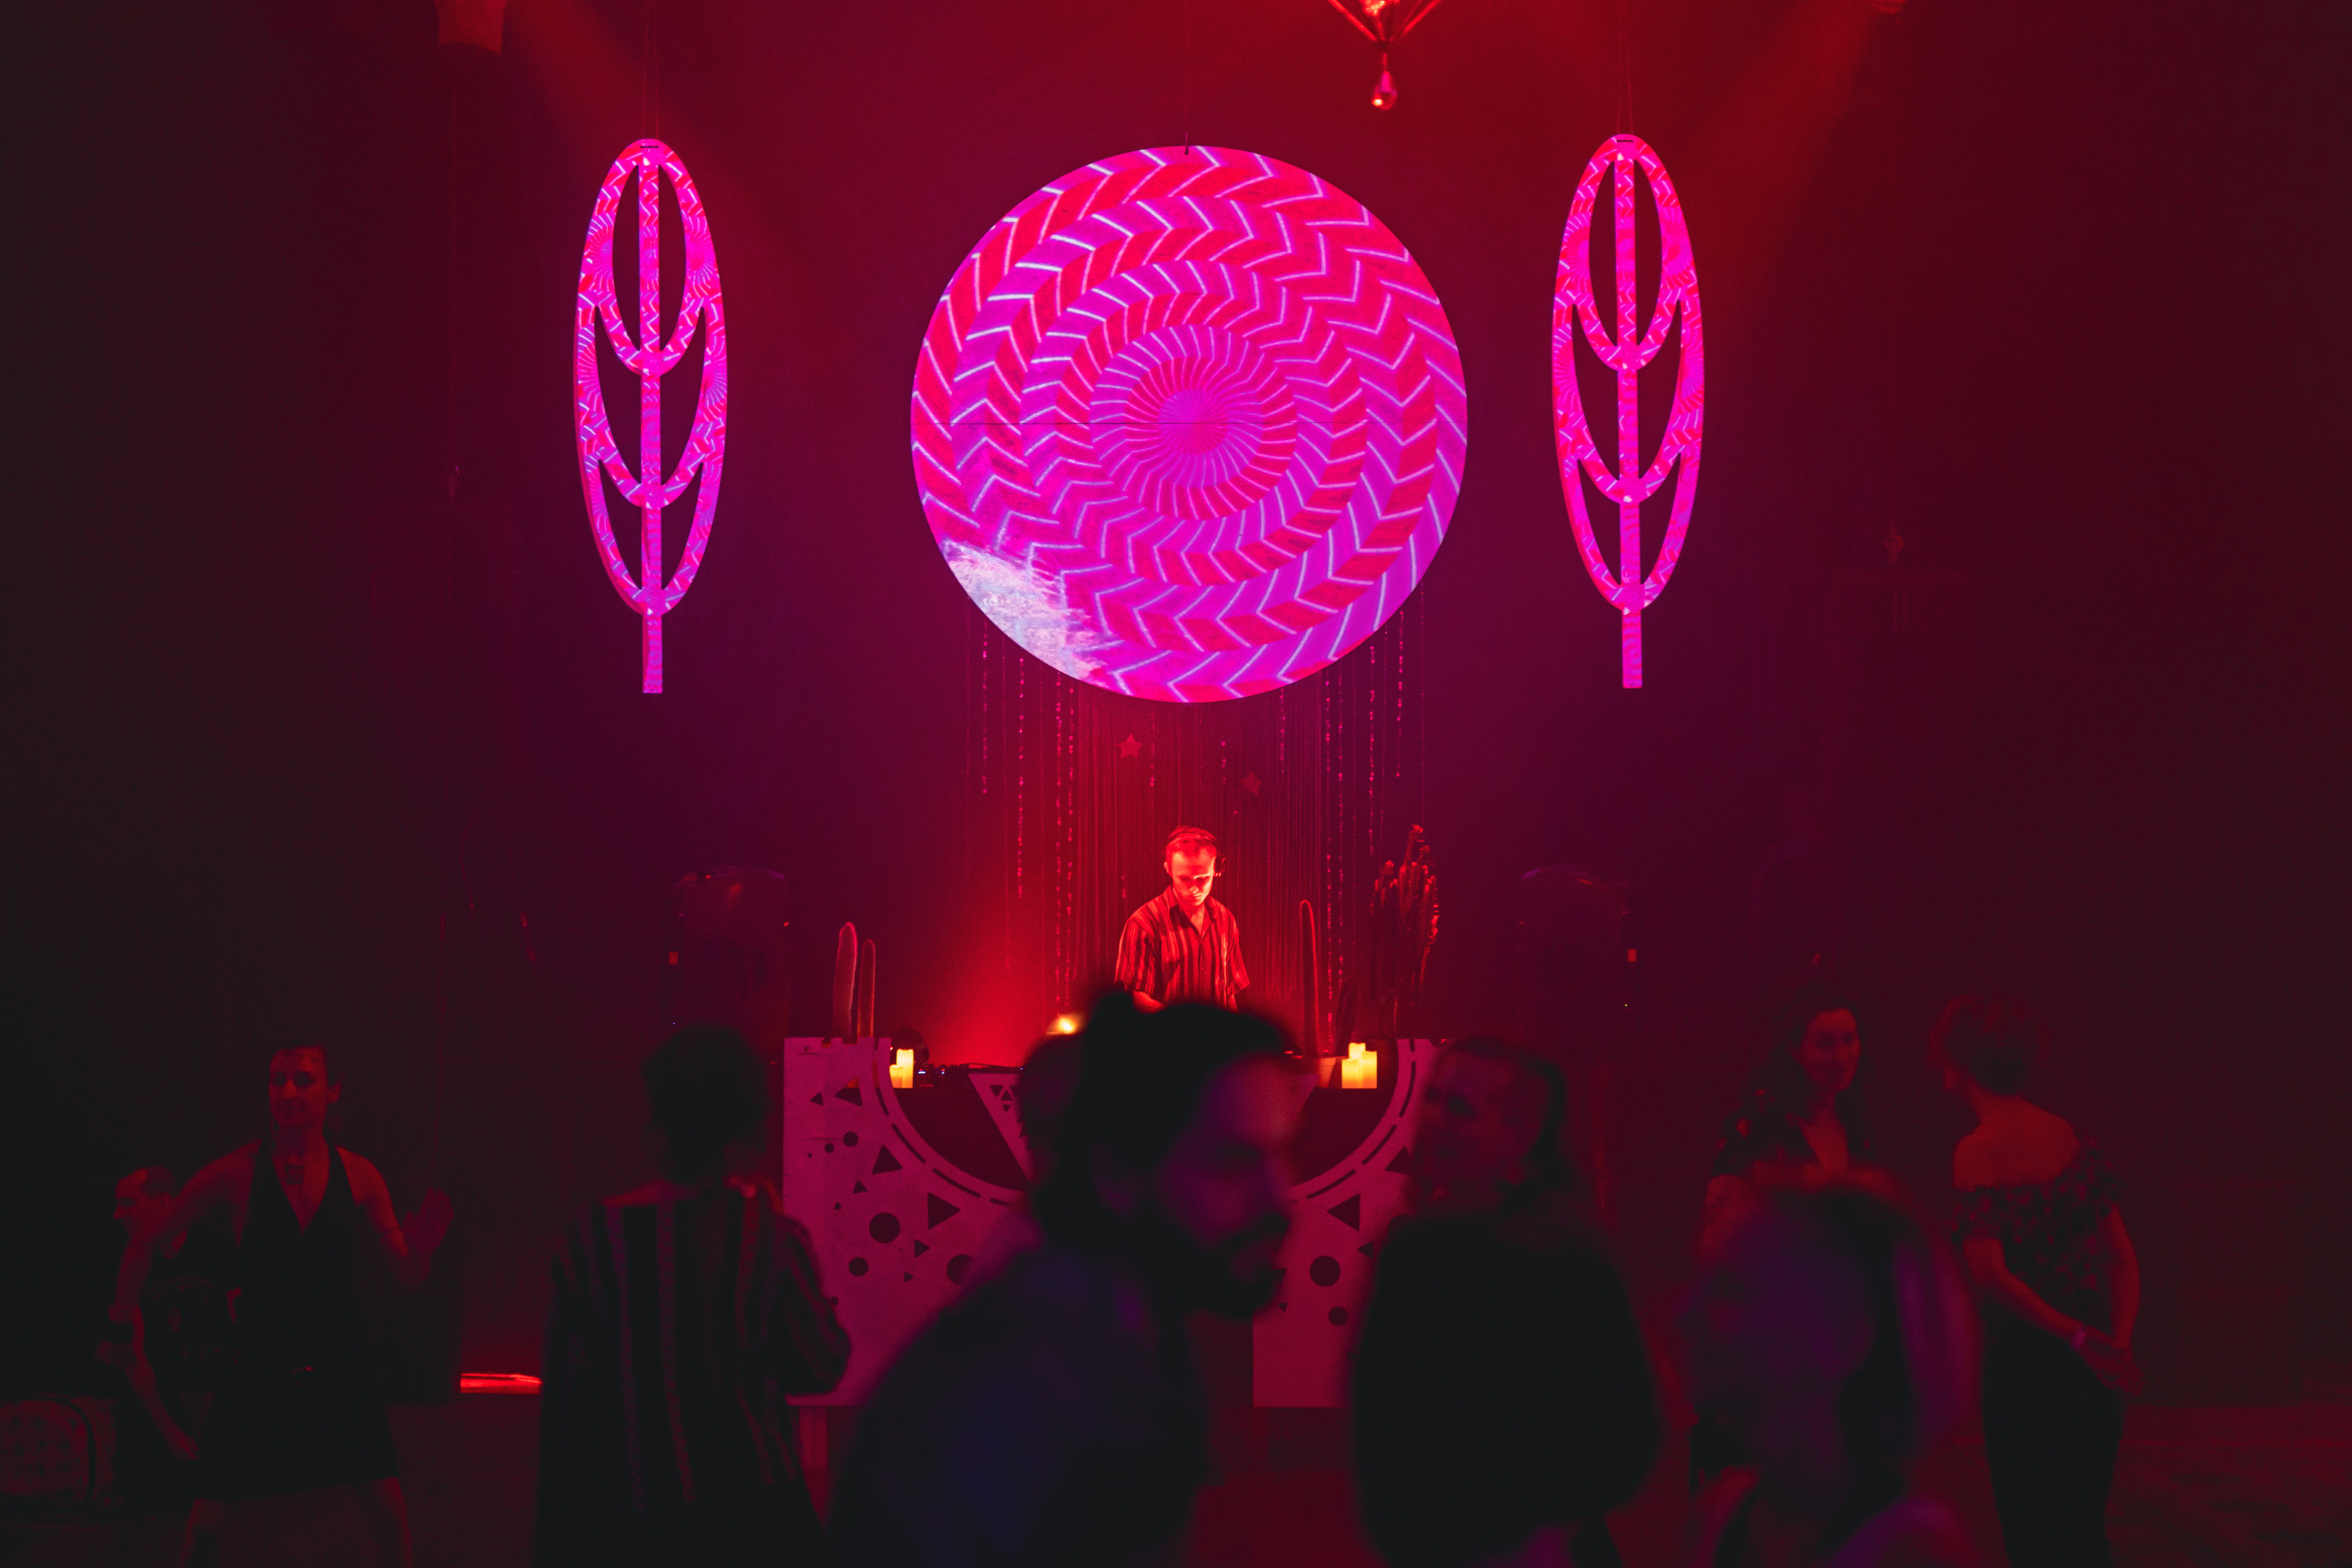 UN DJ en pleine performance durant un événement intérieur, sur fonds de tientes roses et rouge profond, avec une boule géante lumineuse au-dessus et entouré de deux éléments de décor en forme de feuilles teintés rose, avec des danseurs sur la piste de danse